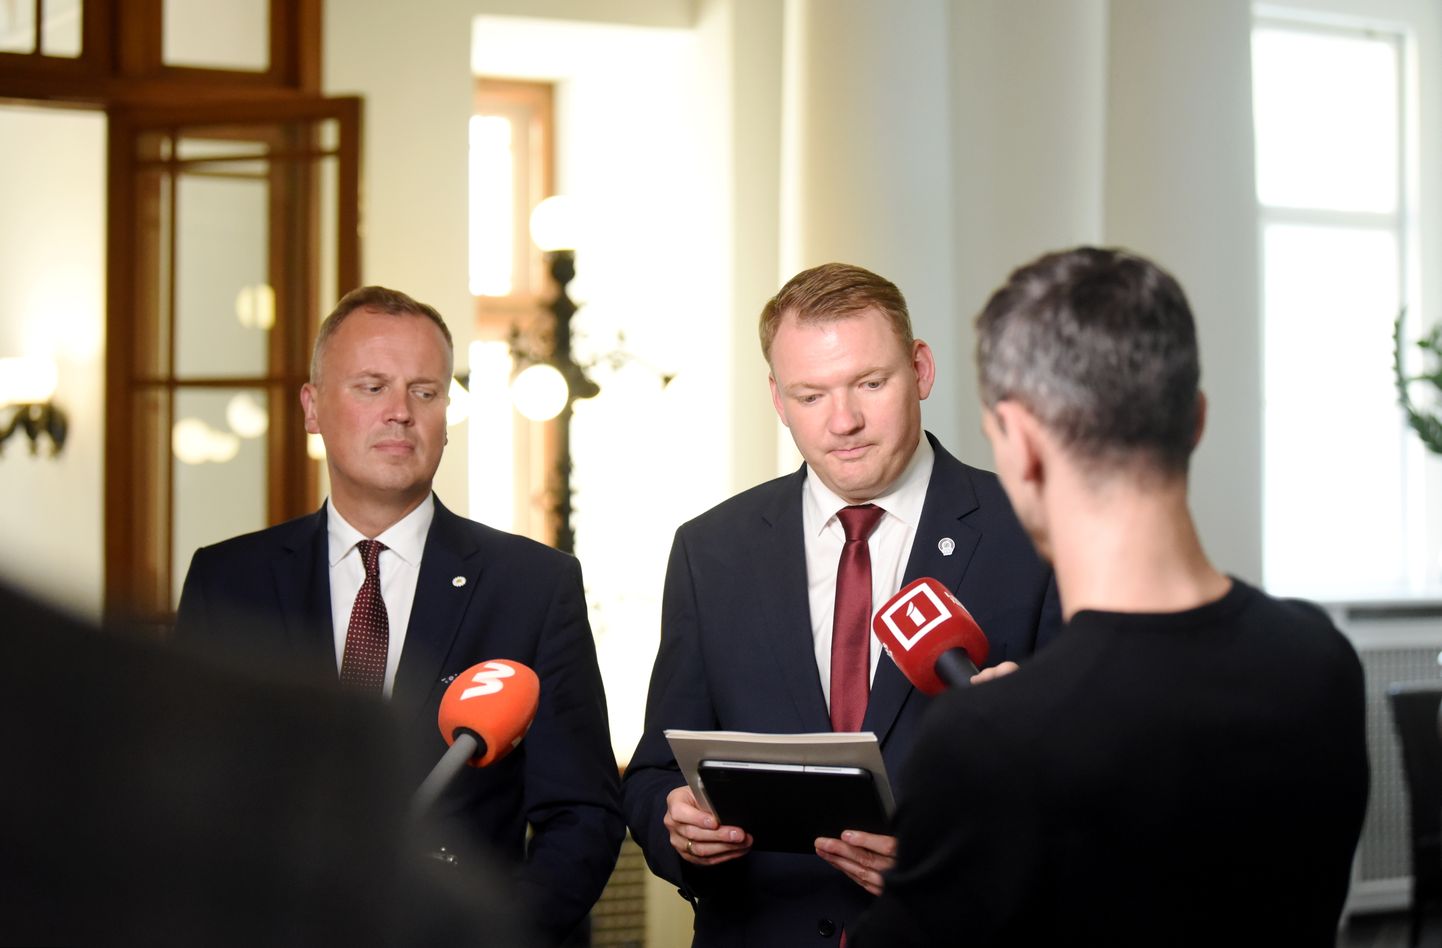 Partiju apvienības "Apvienotais saraksts" līdzpriekšsēdētājs, Saeimas deputāts Edgars Tavars (no kreisās) un partiju apvienības "Apvienotais saraksts" līdzpriekšsēdētājs, Saeimas priekšsēdētājs Edvards Smiltēns